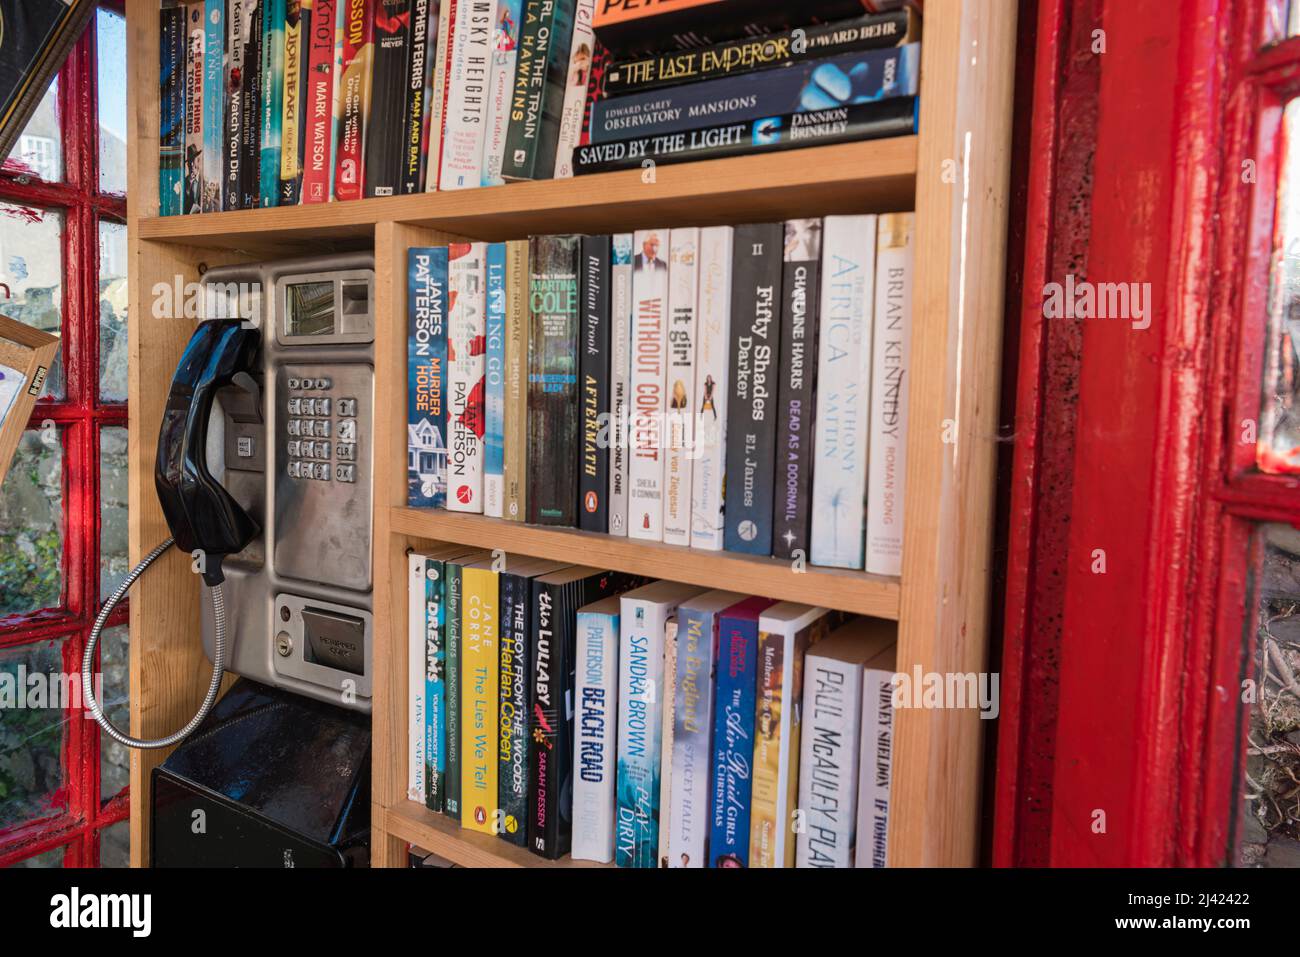 Bücher, die in einem roten Telefonkasten in Regalen angeordnet sind, können ausgeliehen werden. Stockfoto